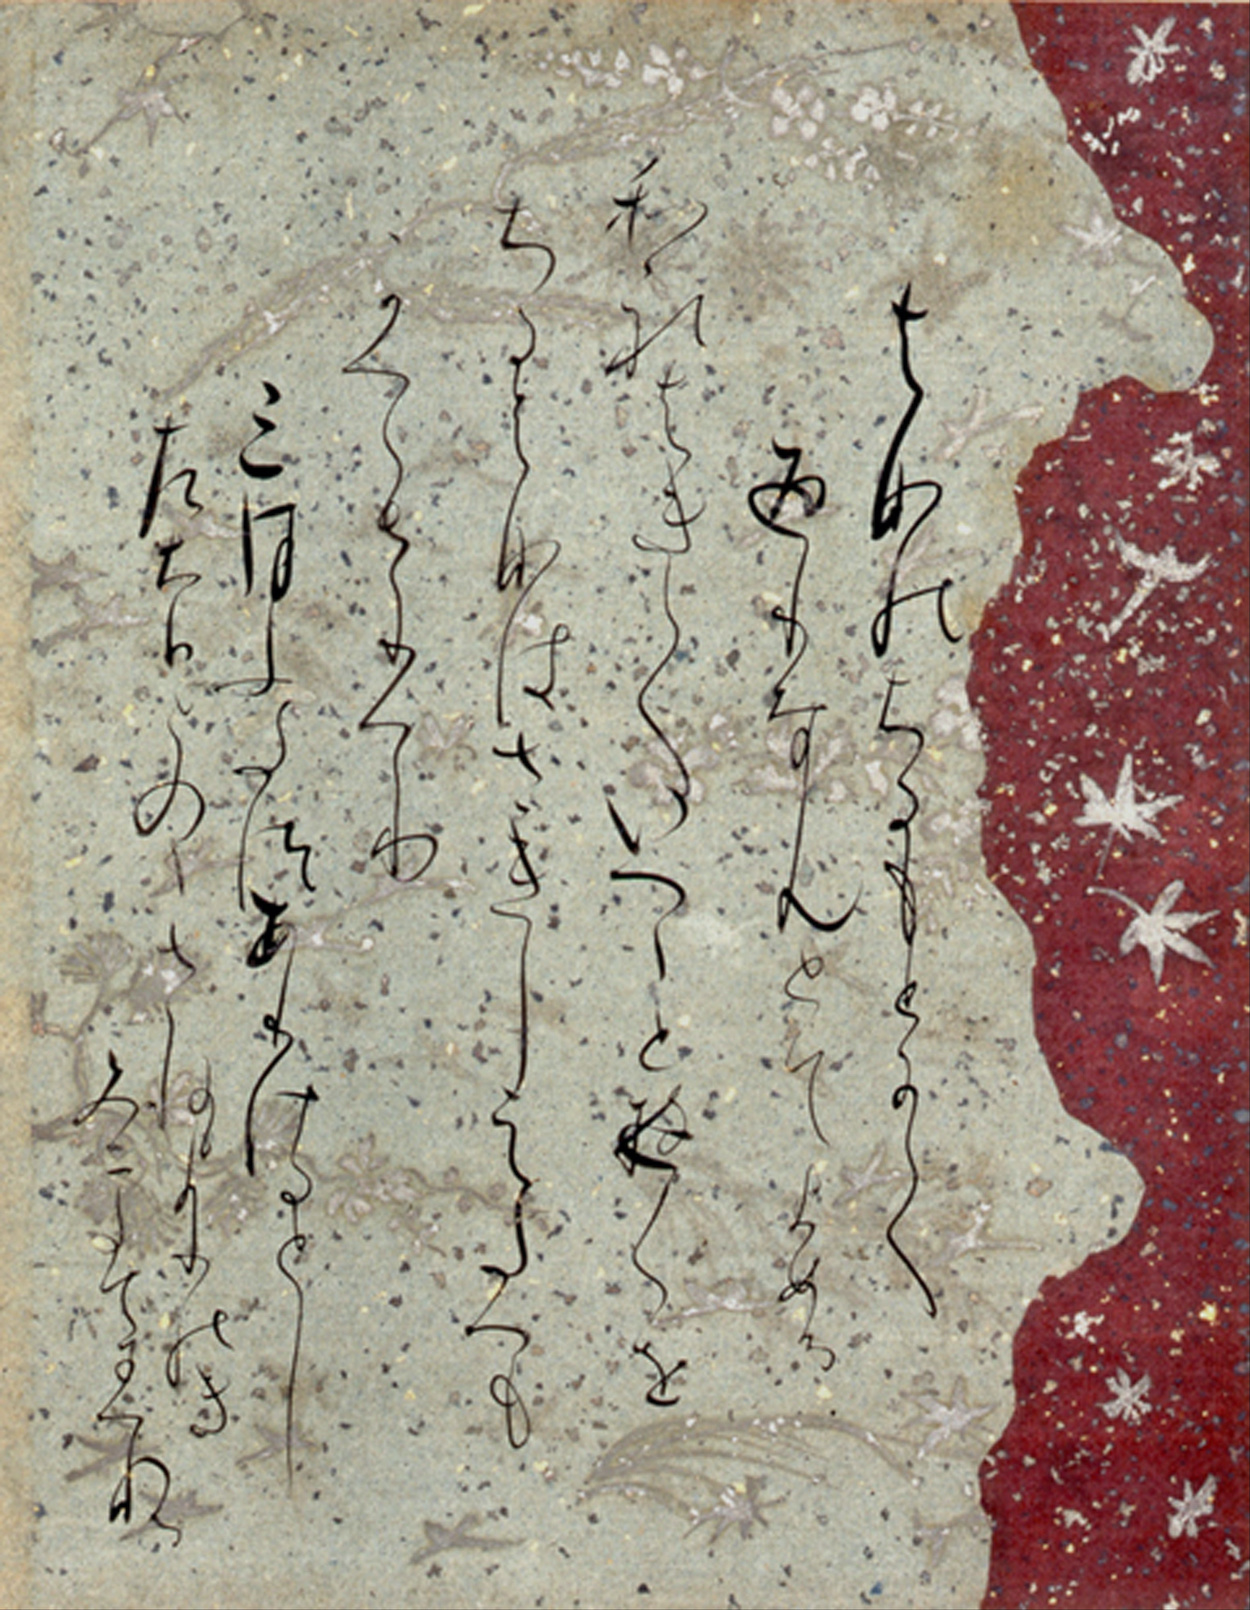 Fujiwara no Sadanobu (attrib.) - 1088 - 10. Februar 1156